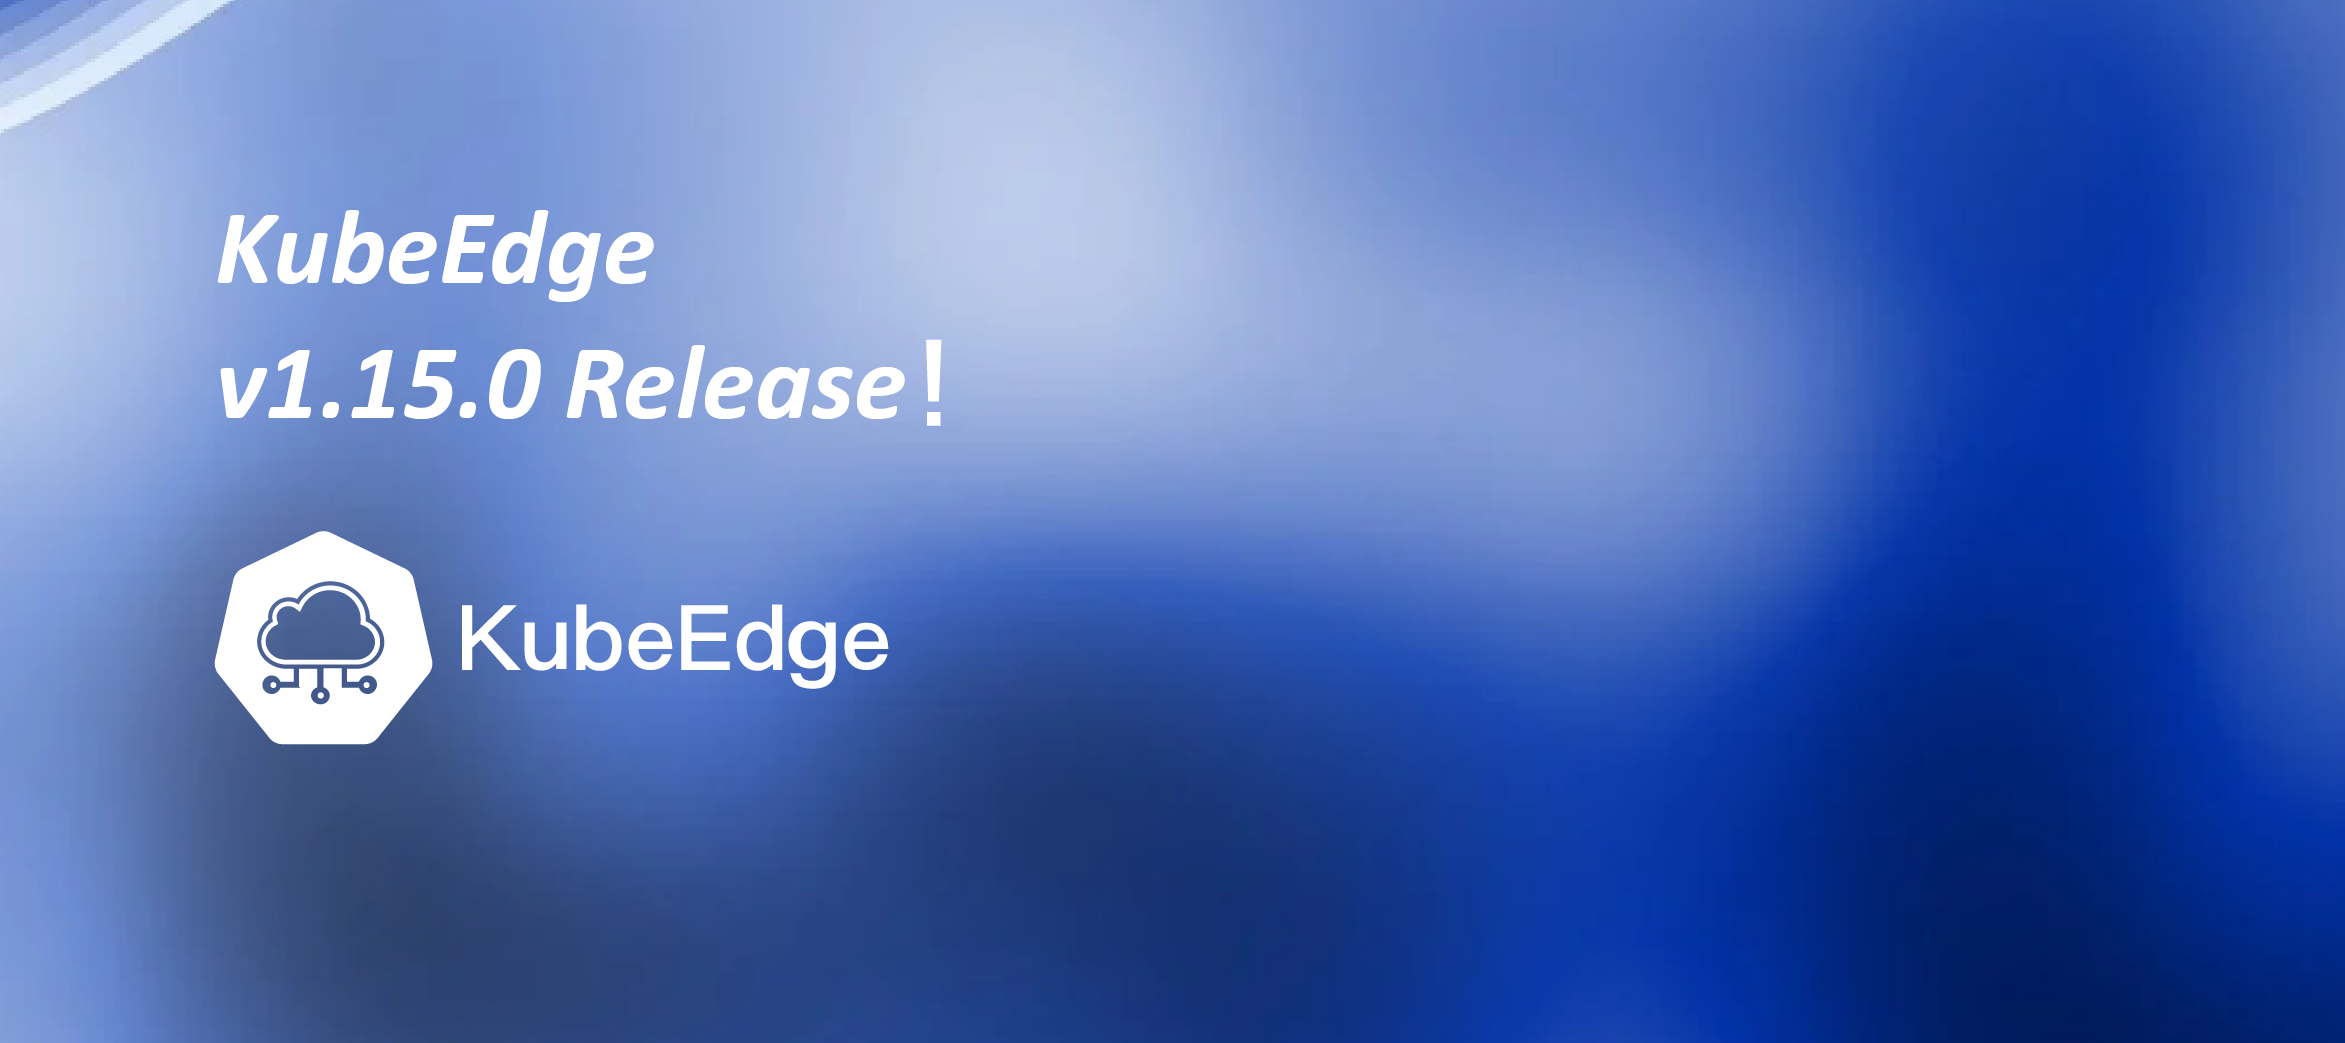 KubeEdge v1.15.0 发布！新增 Windows 边缘节点支持，基于物模型设备管理 DMI 数据面支持等功能